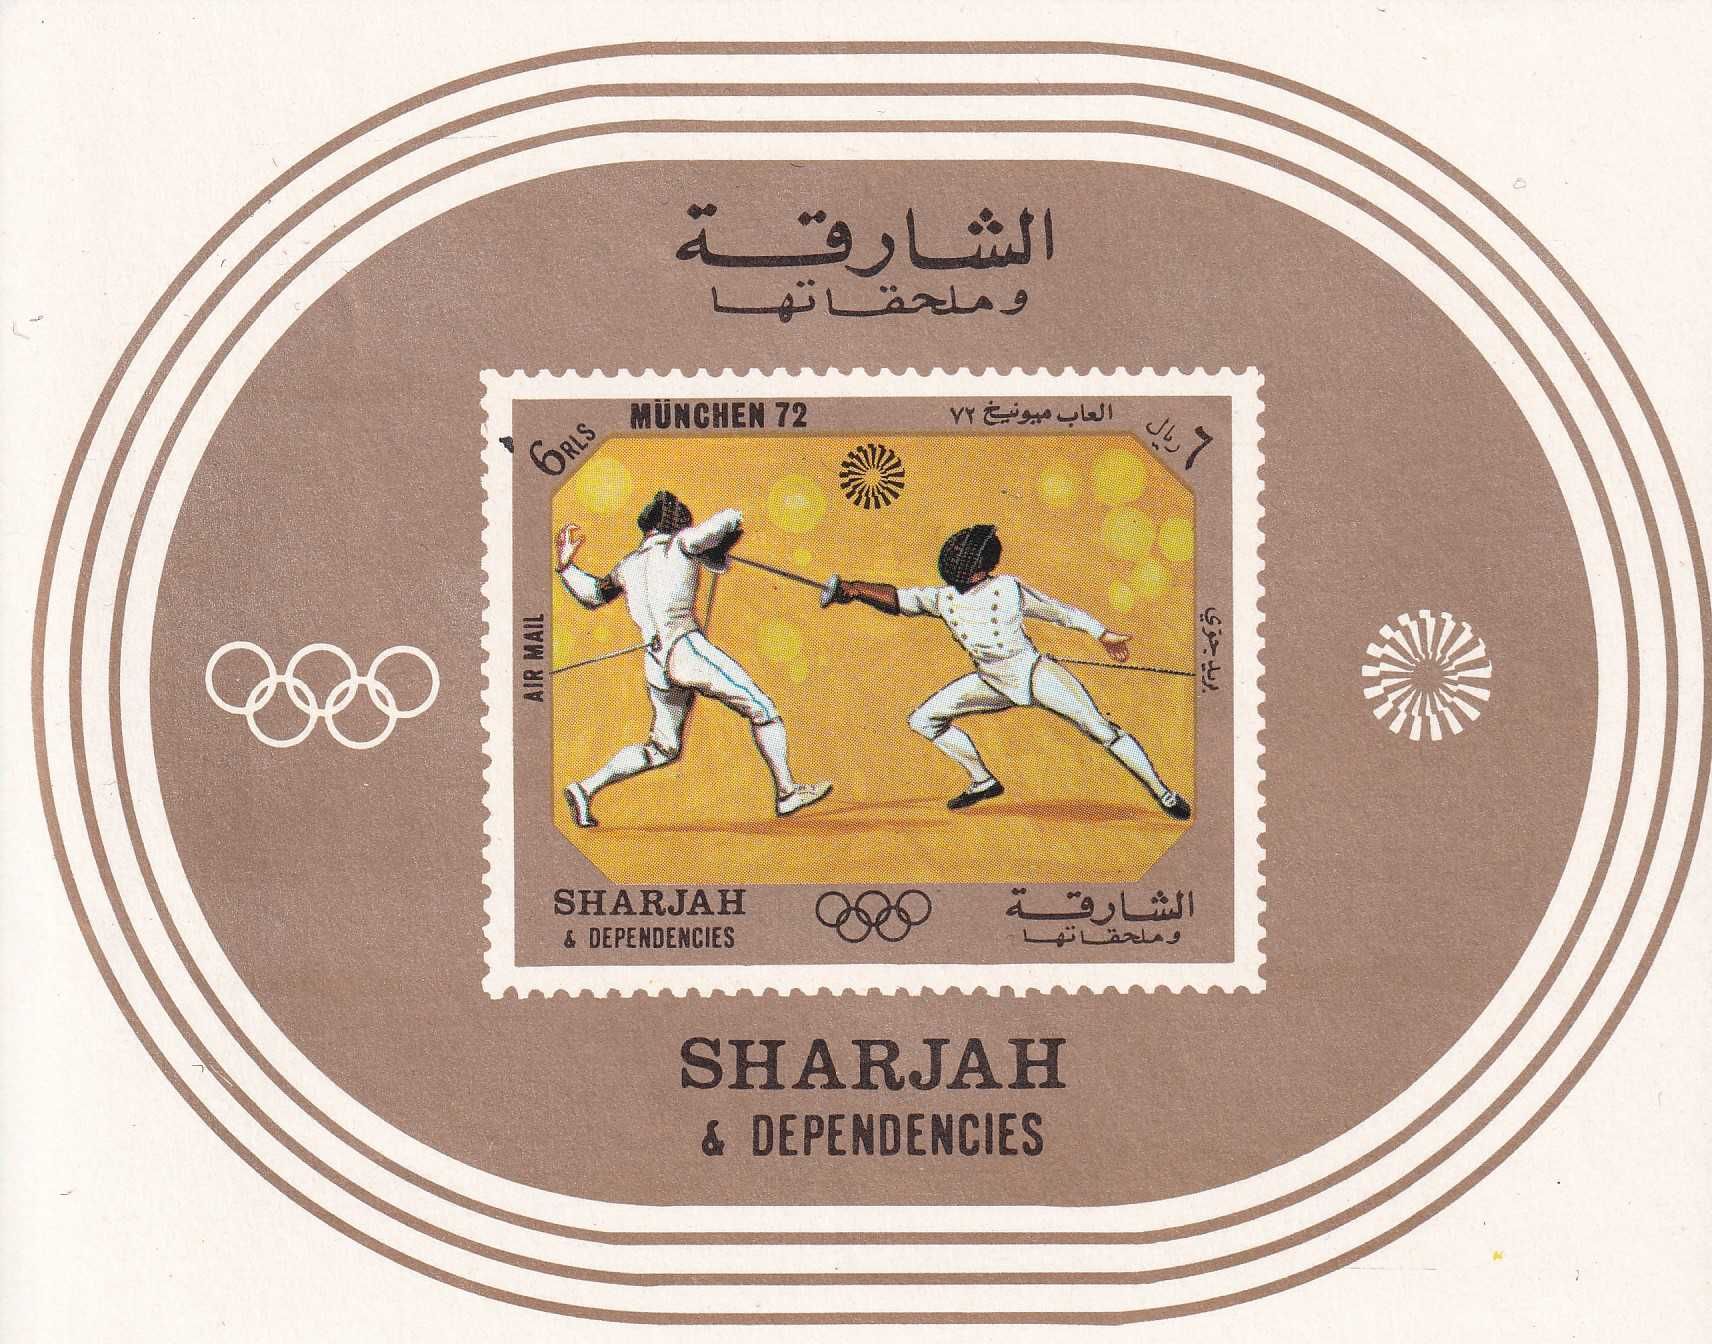 znaczki pocztowe czyste - Sharjah 1972 cena 4,90 zł kat.6€